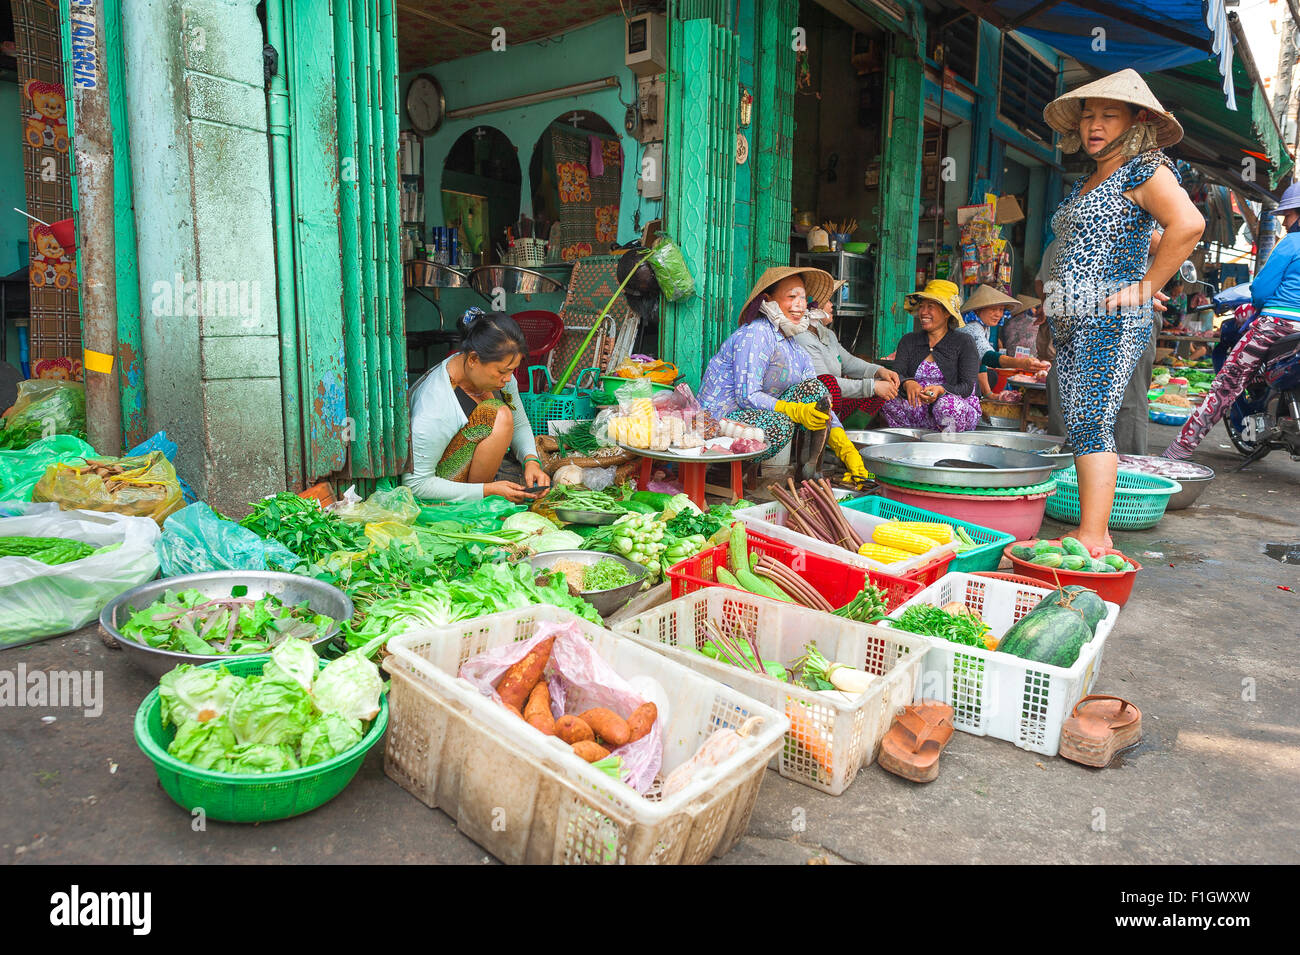 Marché Vietnam Saigon, sur un trottoir en marché Binh Tay dans le quartier de Cholon Saigon vietnamiennes vendent des légumes frais. Banque D'Images